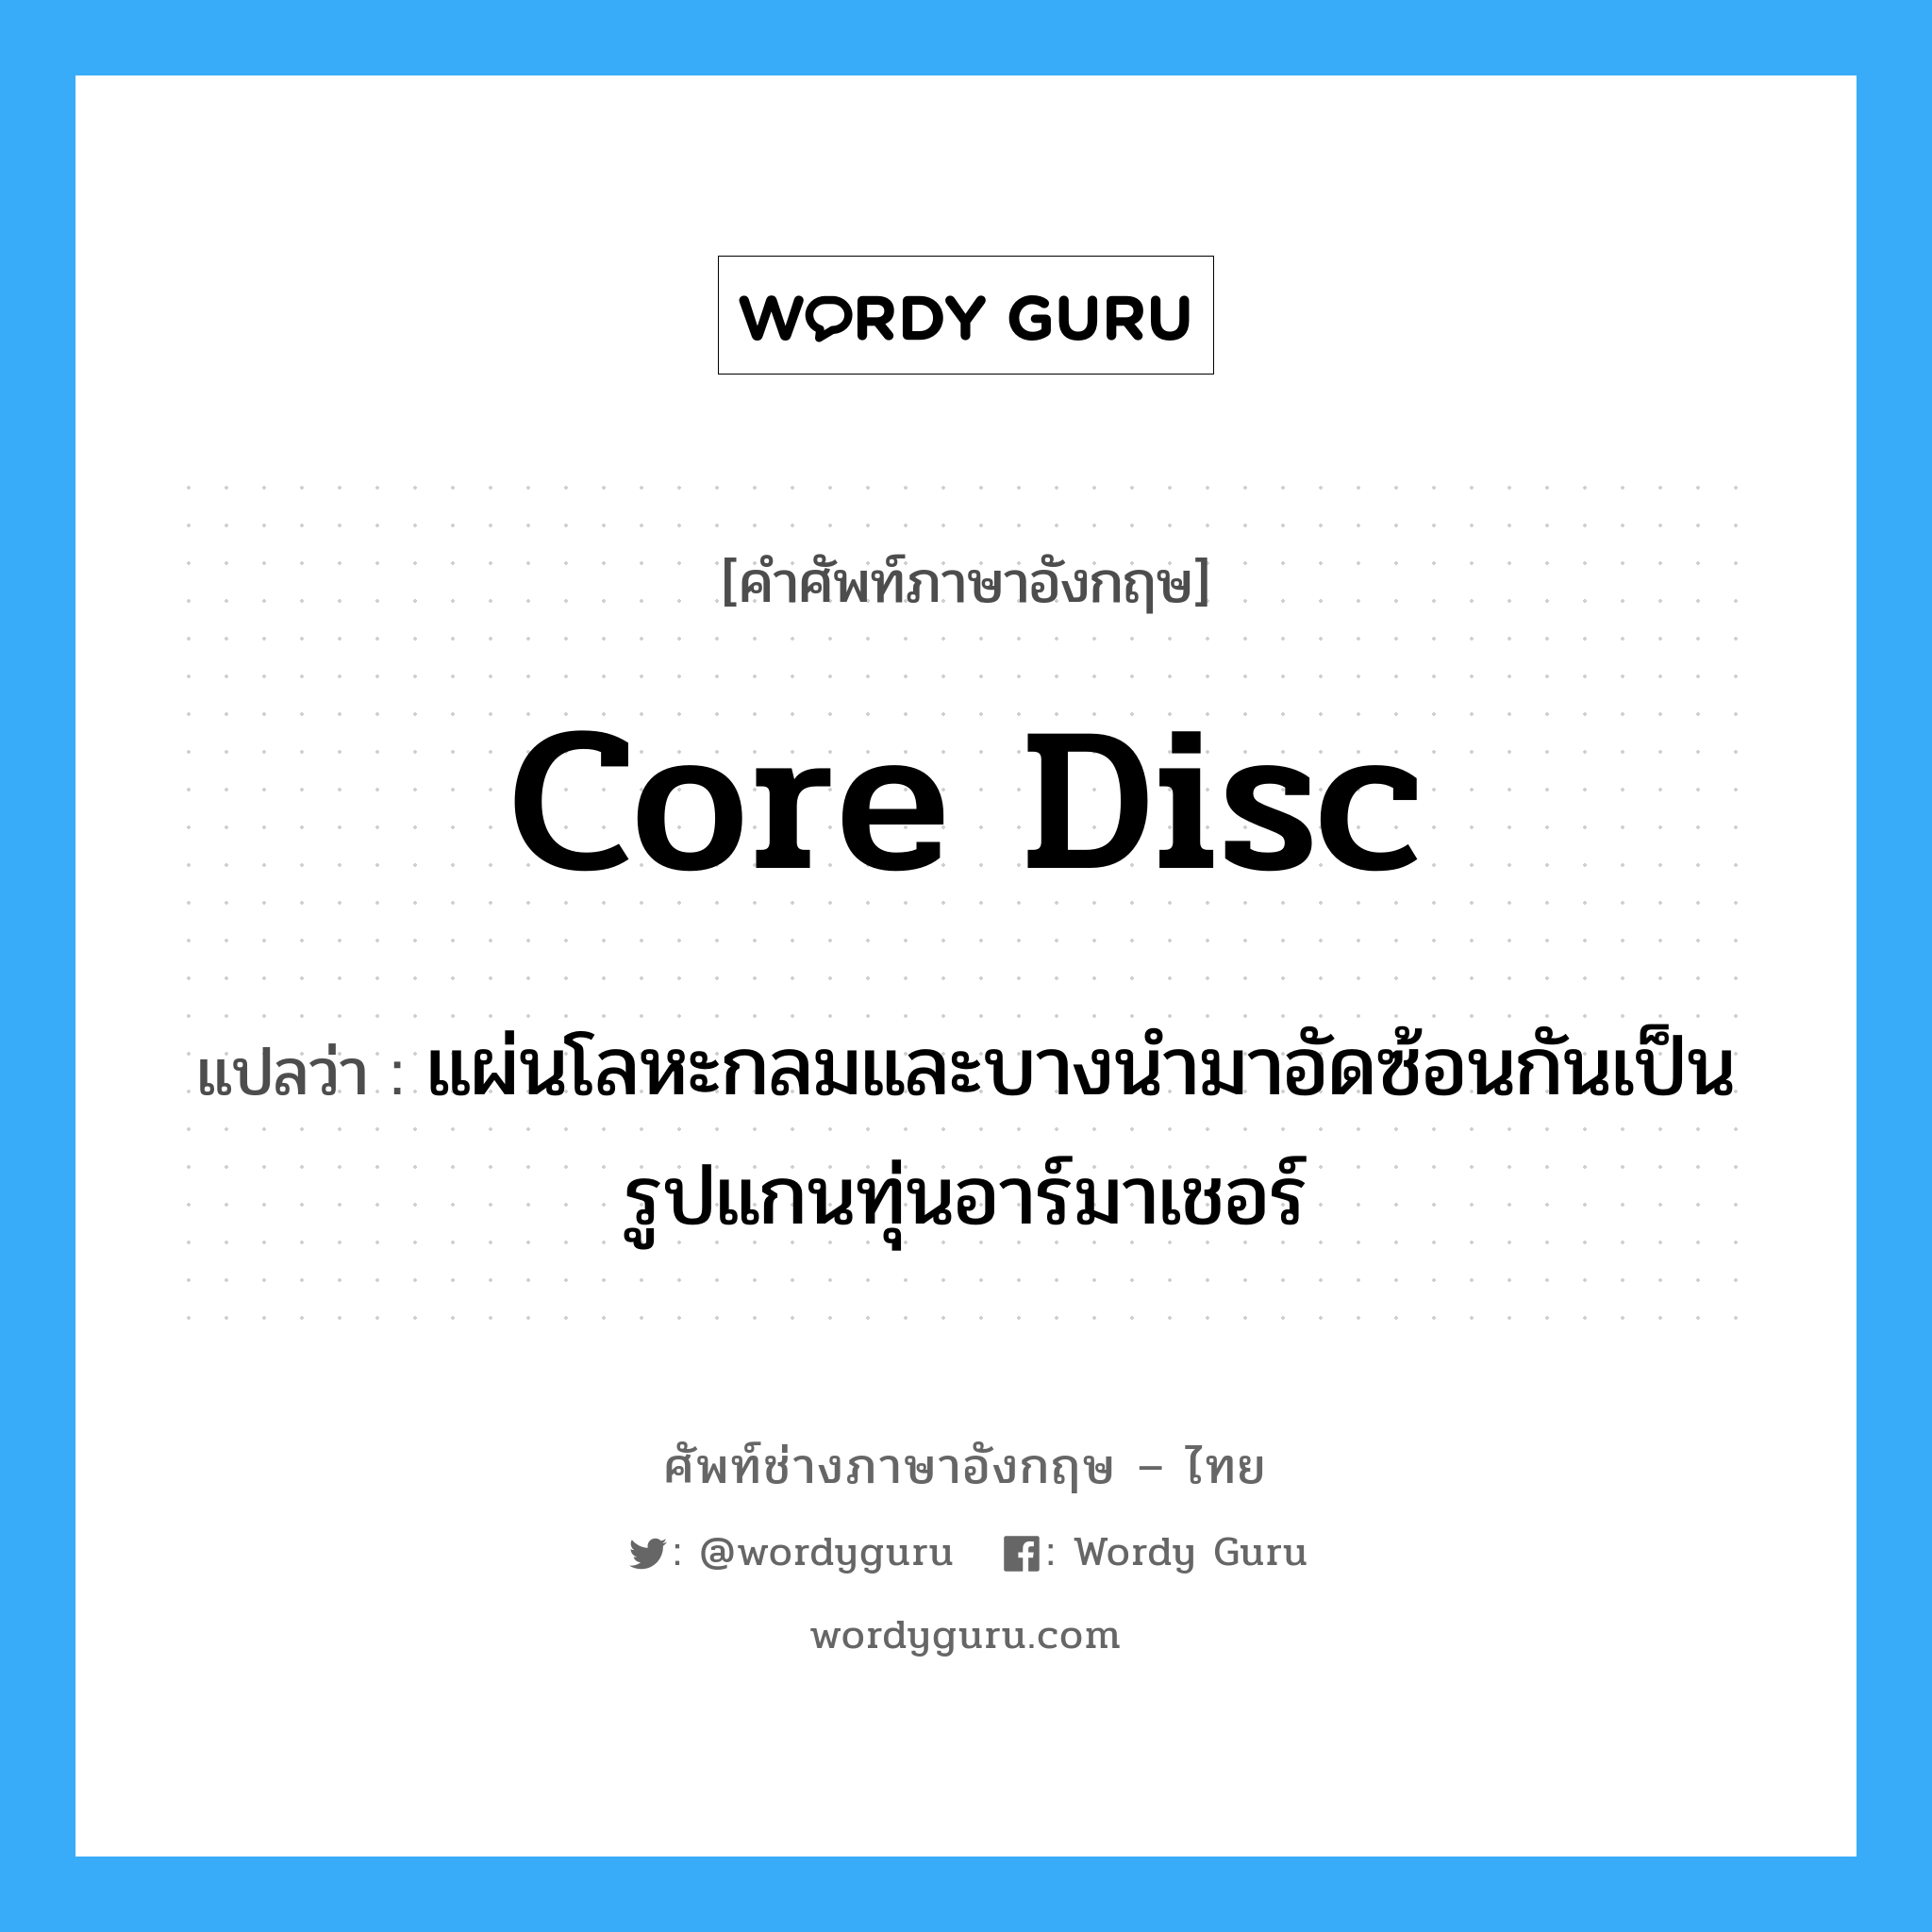 core disc แปลว่า?, คำศัพท์ช่างภาษาอังกฤษ - ไทย core disc คำศัพท์ภาษาอังกฤษ core disc แปลว่า แผ่นโลหะกลมและบางนำมาอัดซ้อนกันเป็นรูปแกนทุ่นอาร์มาเชอร์